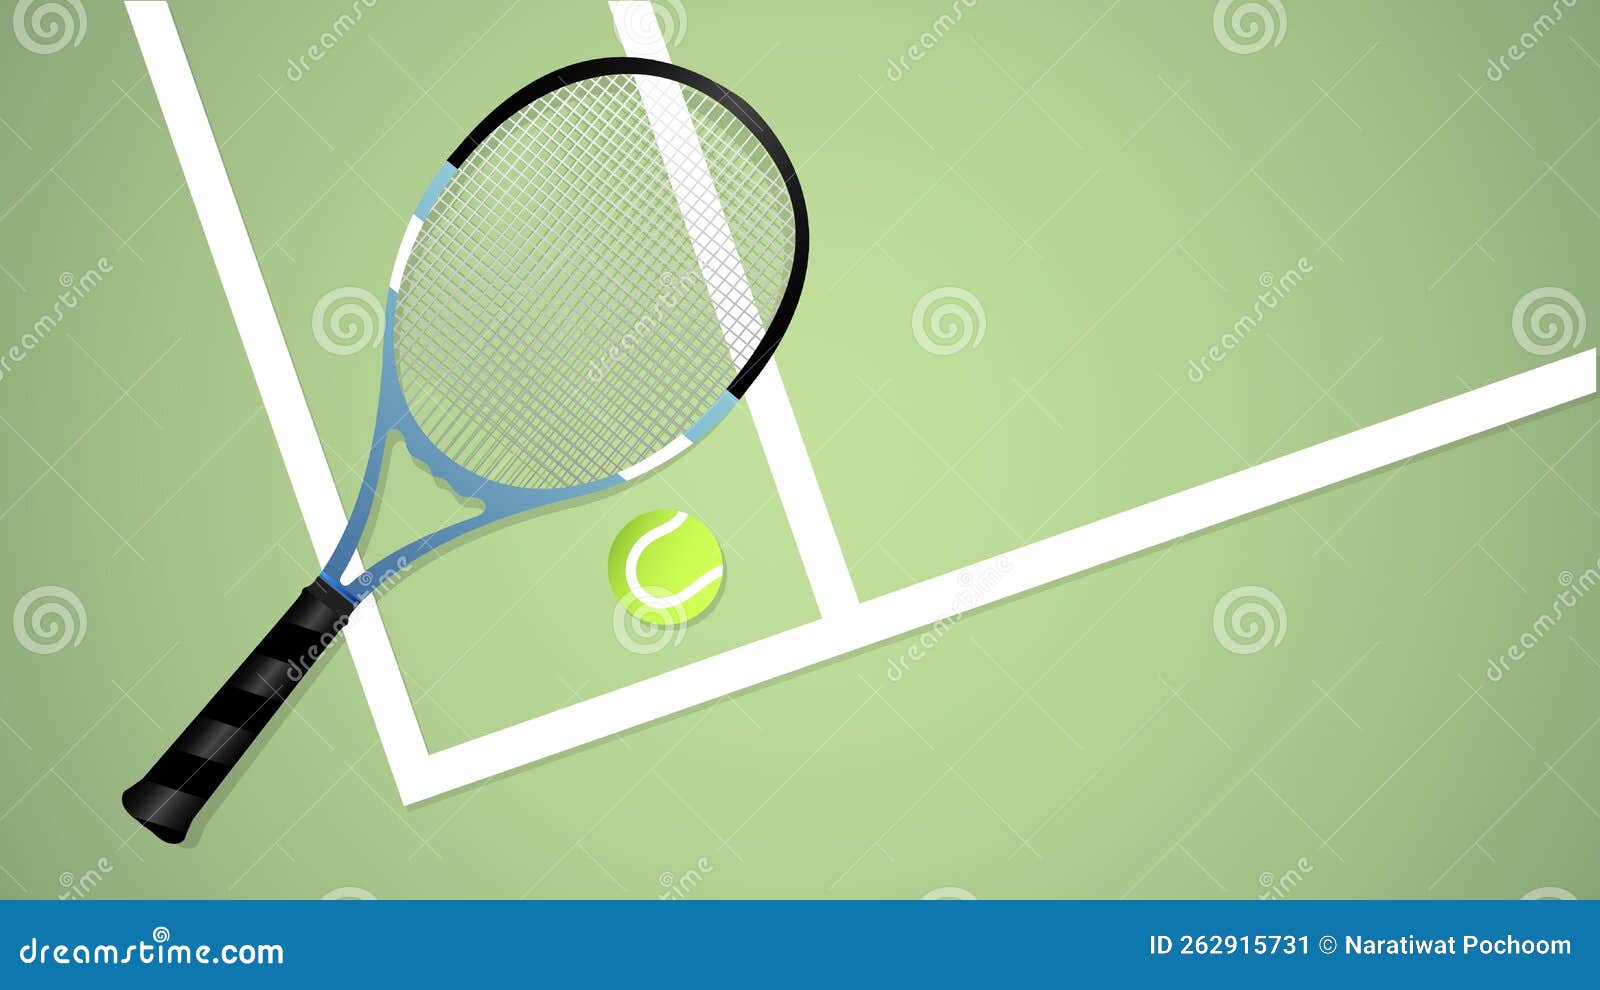 Tennis-Hintergrundbilder Zur Verwendung in Online-Veranstaltungen Zur Veranschaulichung Von Vektor Stock Abbildung